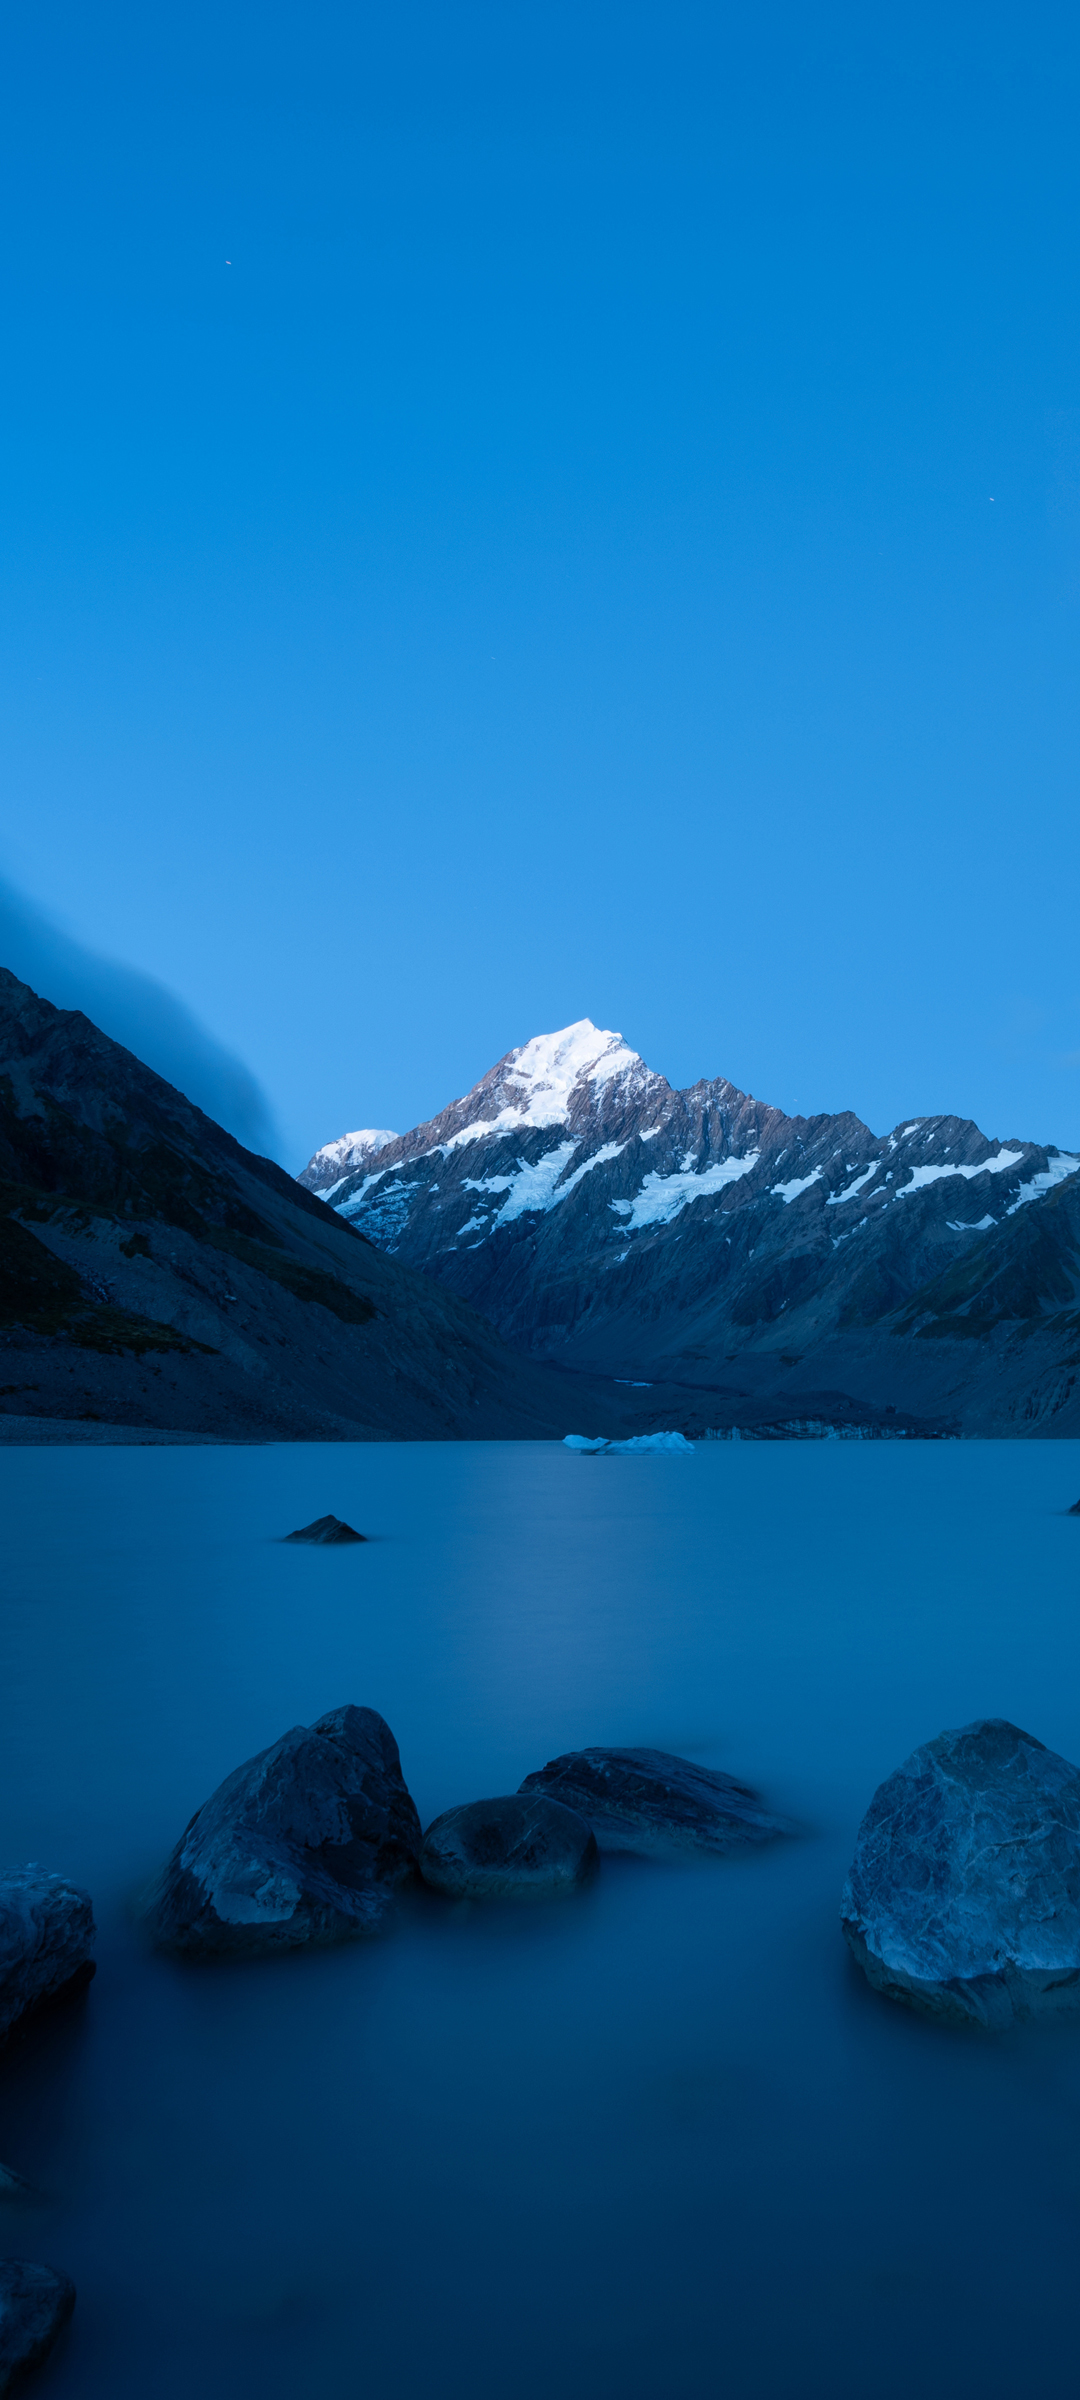 雪山高峰与湖光山色，免费手机风景壁纸下载